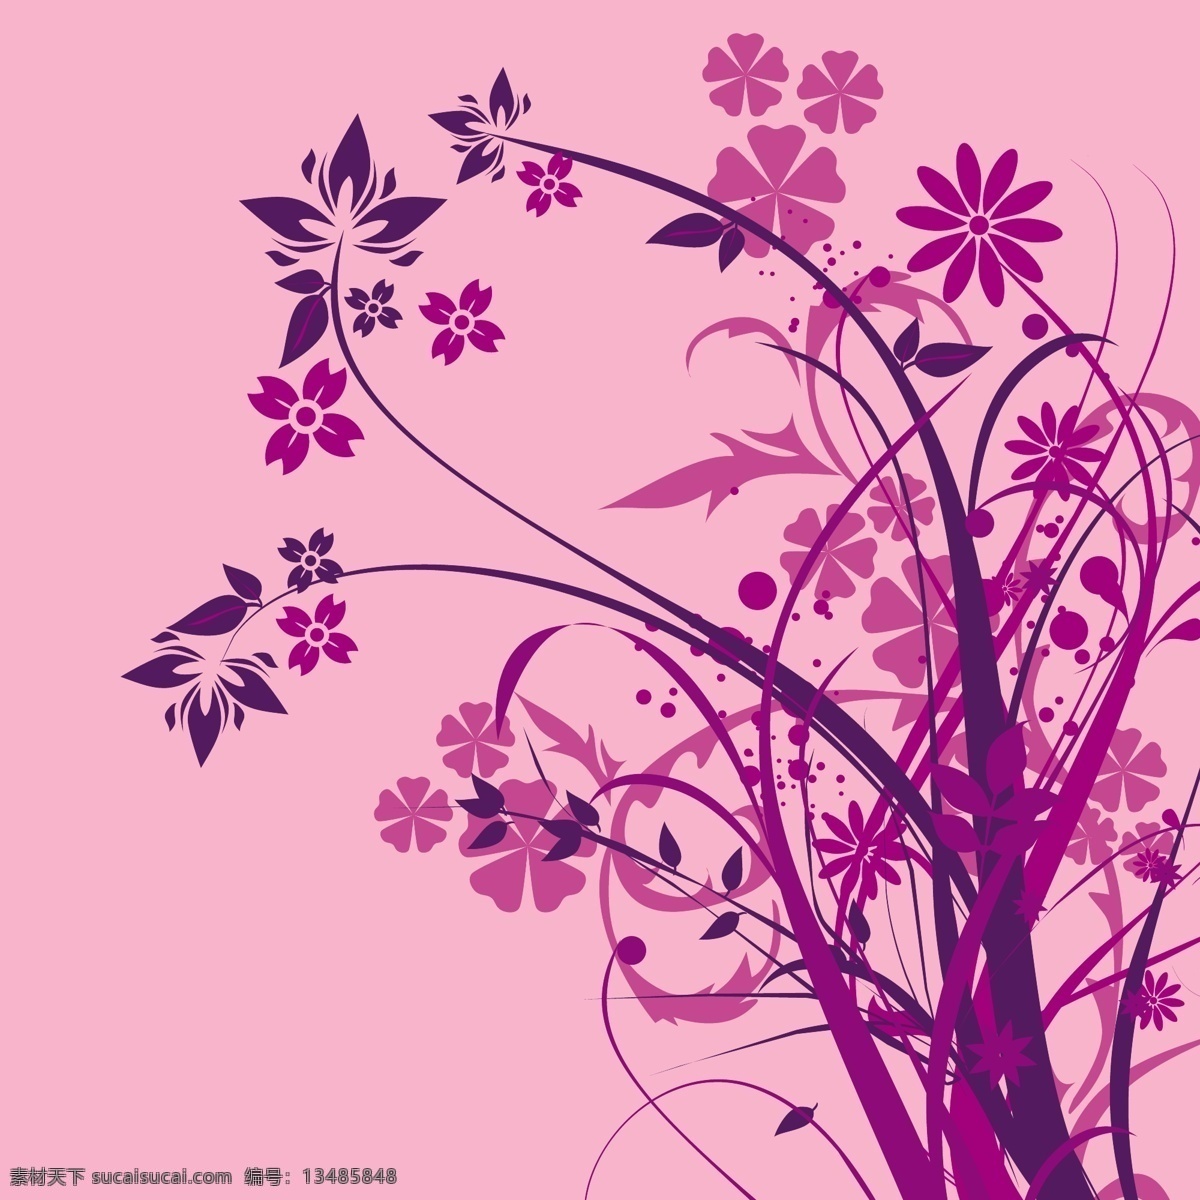 紫色 时尚 花卉 剪影 底纹边框 花纹花边 矢量图库 psd源文件